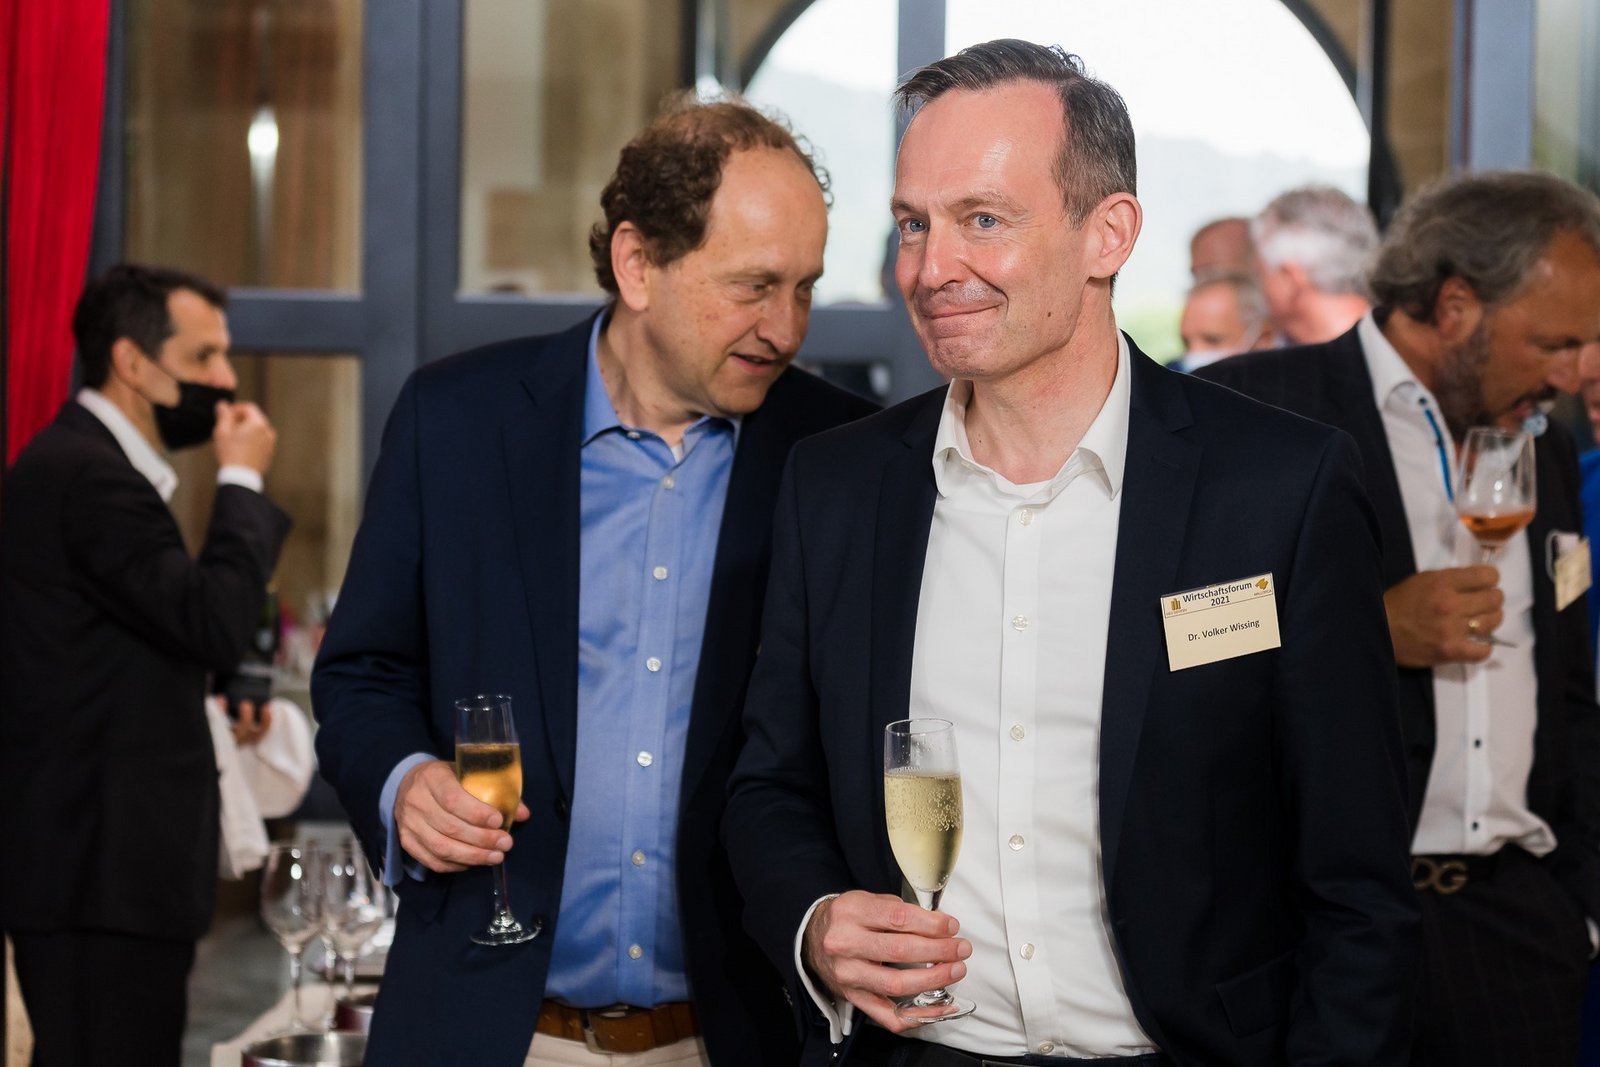 Alexander Graf Lambsdorff und Dr. Volker Wissing von der FDP beim Wirtschaftsforum Neu Denken im Juni 2021 auf Mallorca.